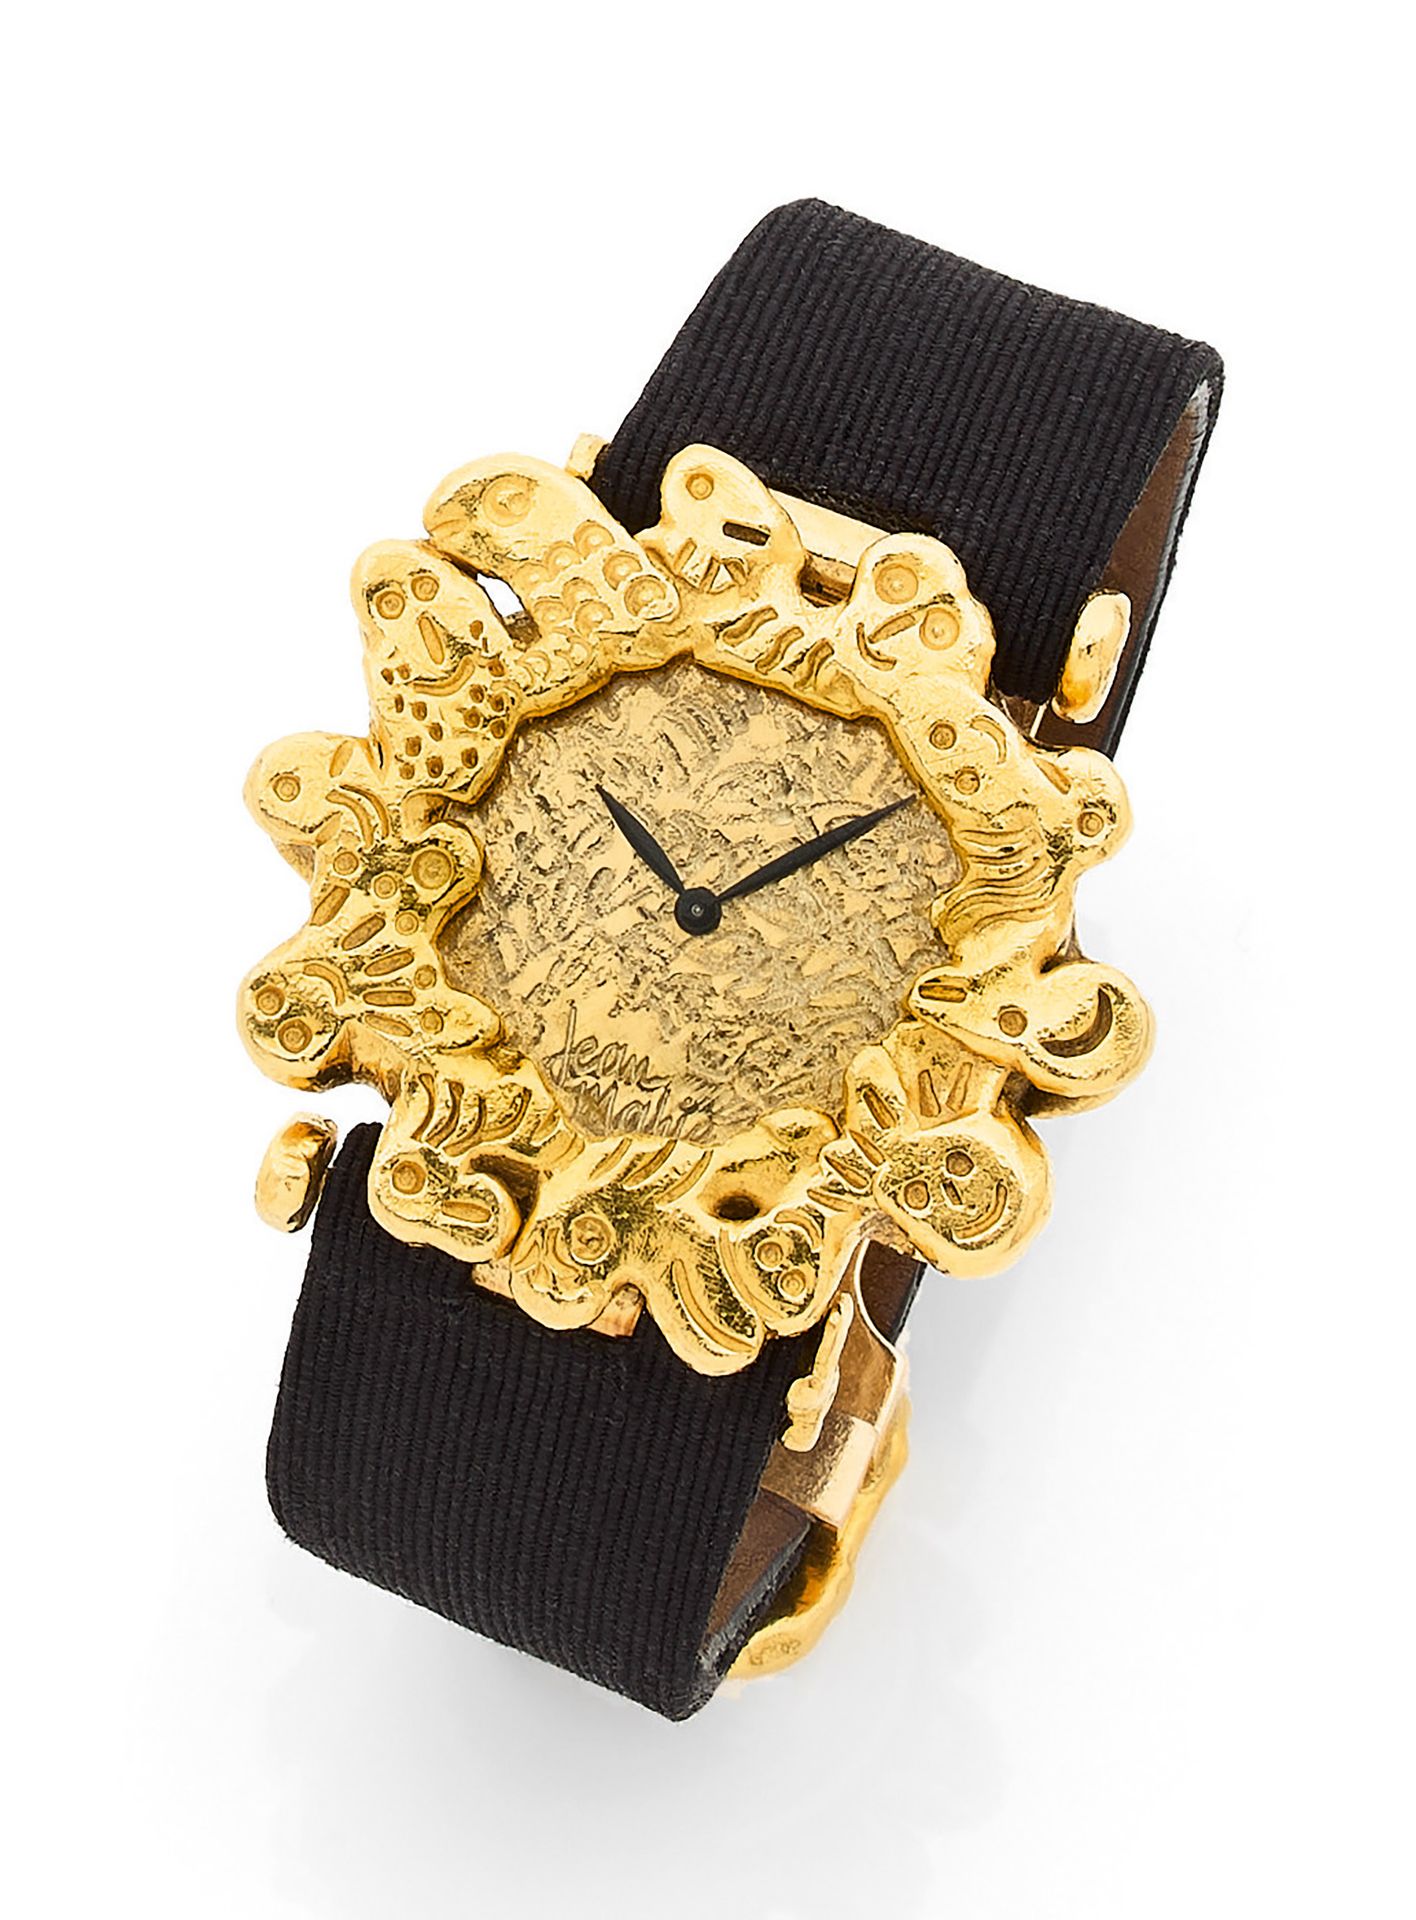 JEAN MAHIÉ JEAN MAHIÉ
Reloj de pulsera de señora en oro de 18 quilates (750), es&hellip;